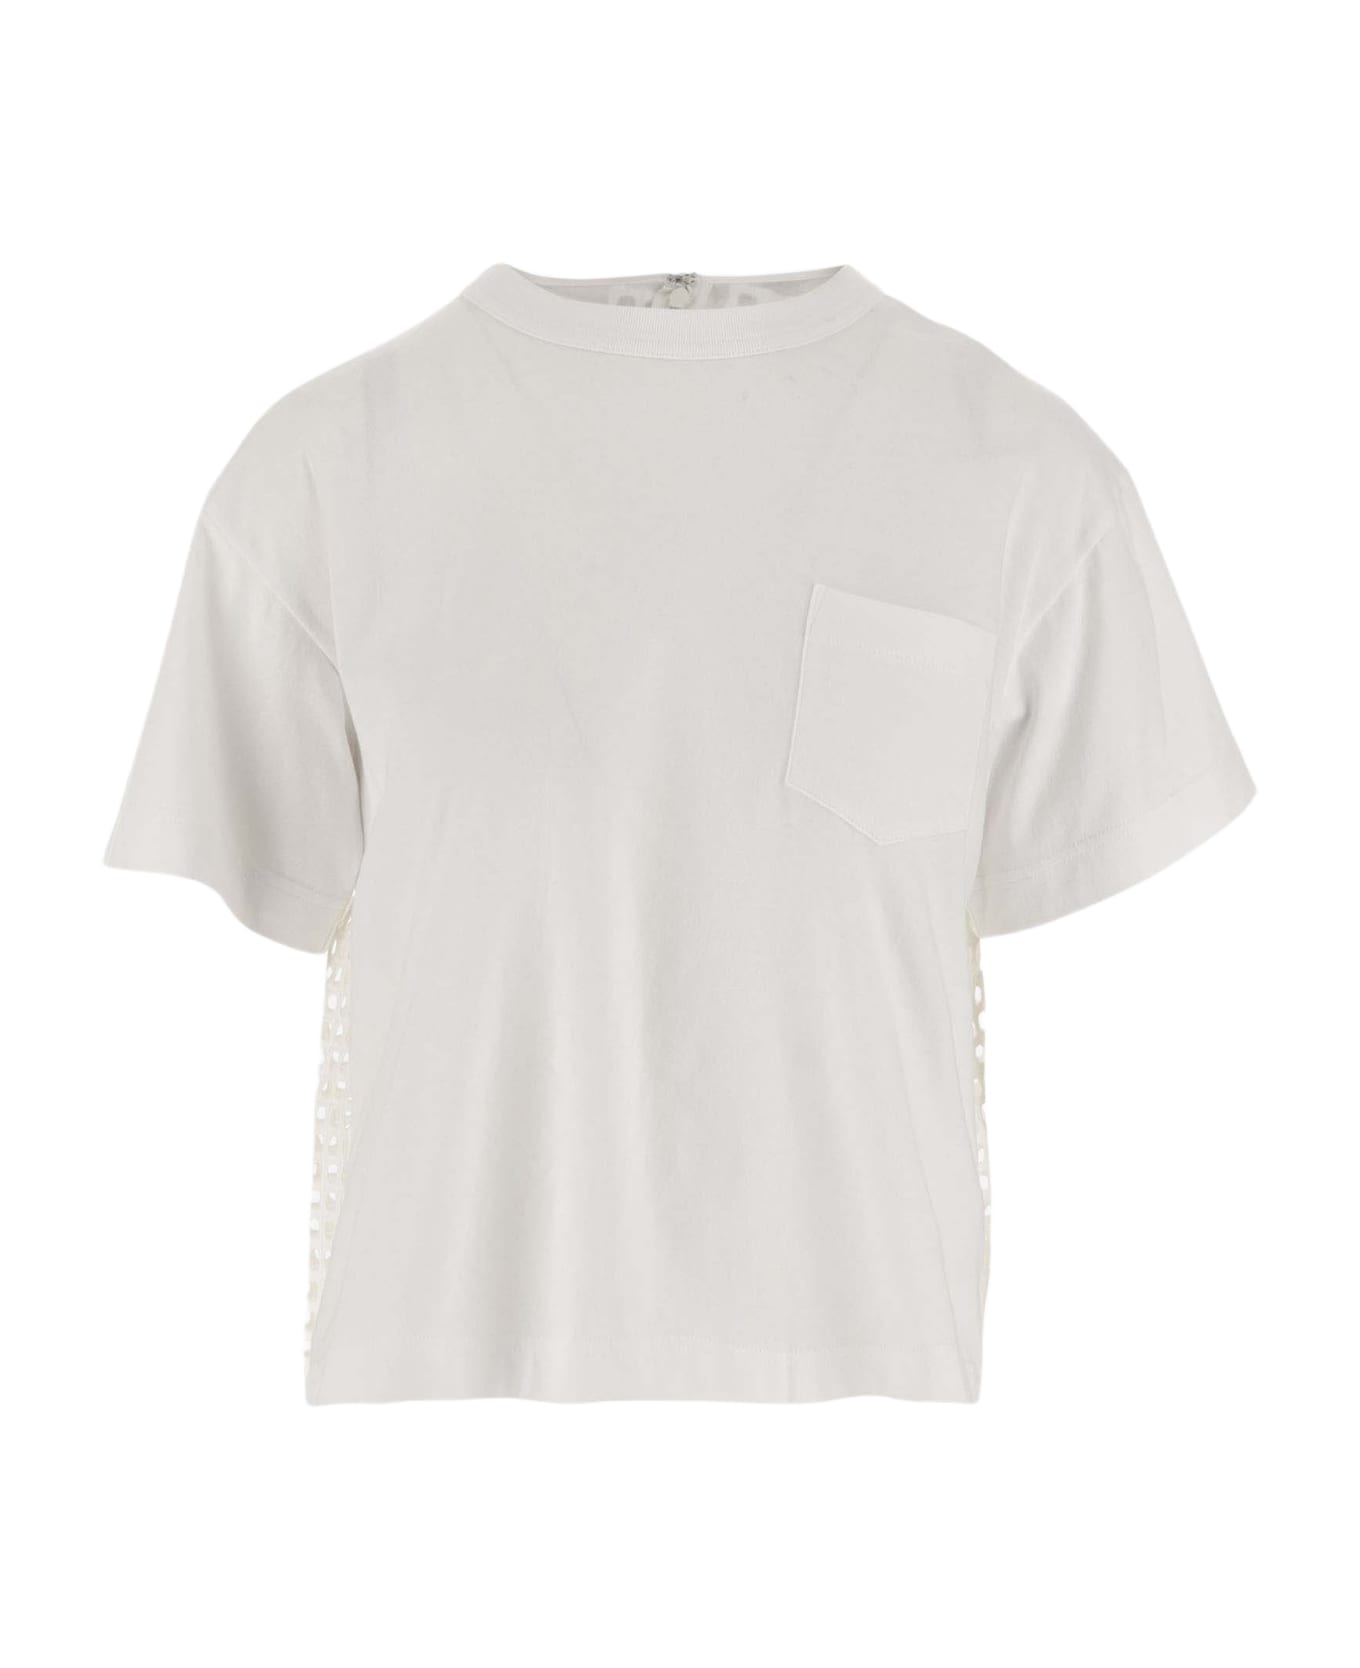 Sacai Cotton T-shirt - White